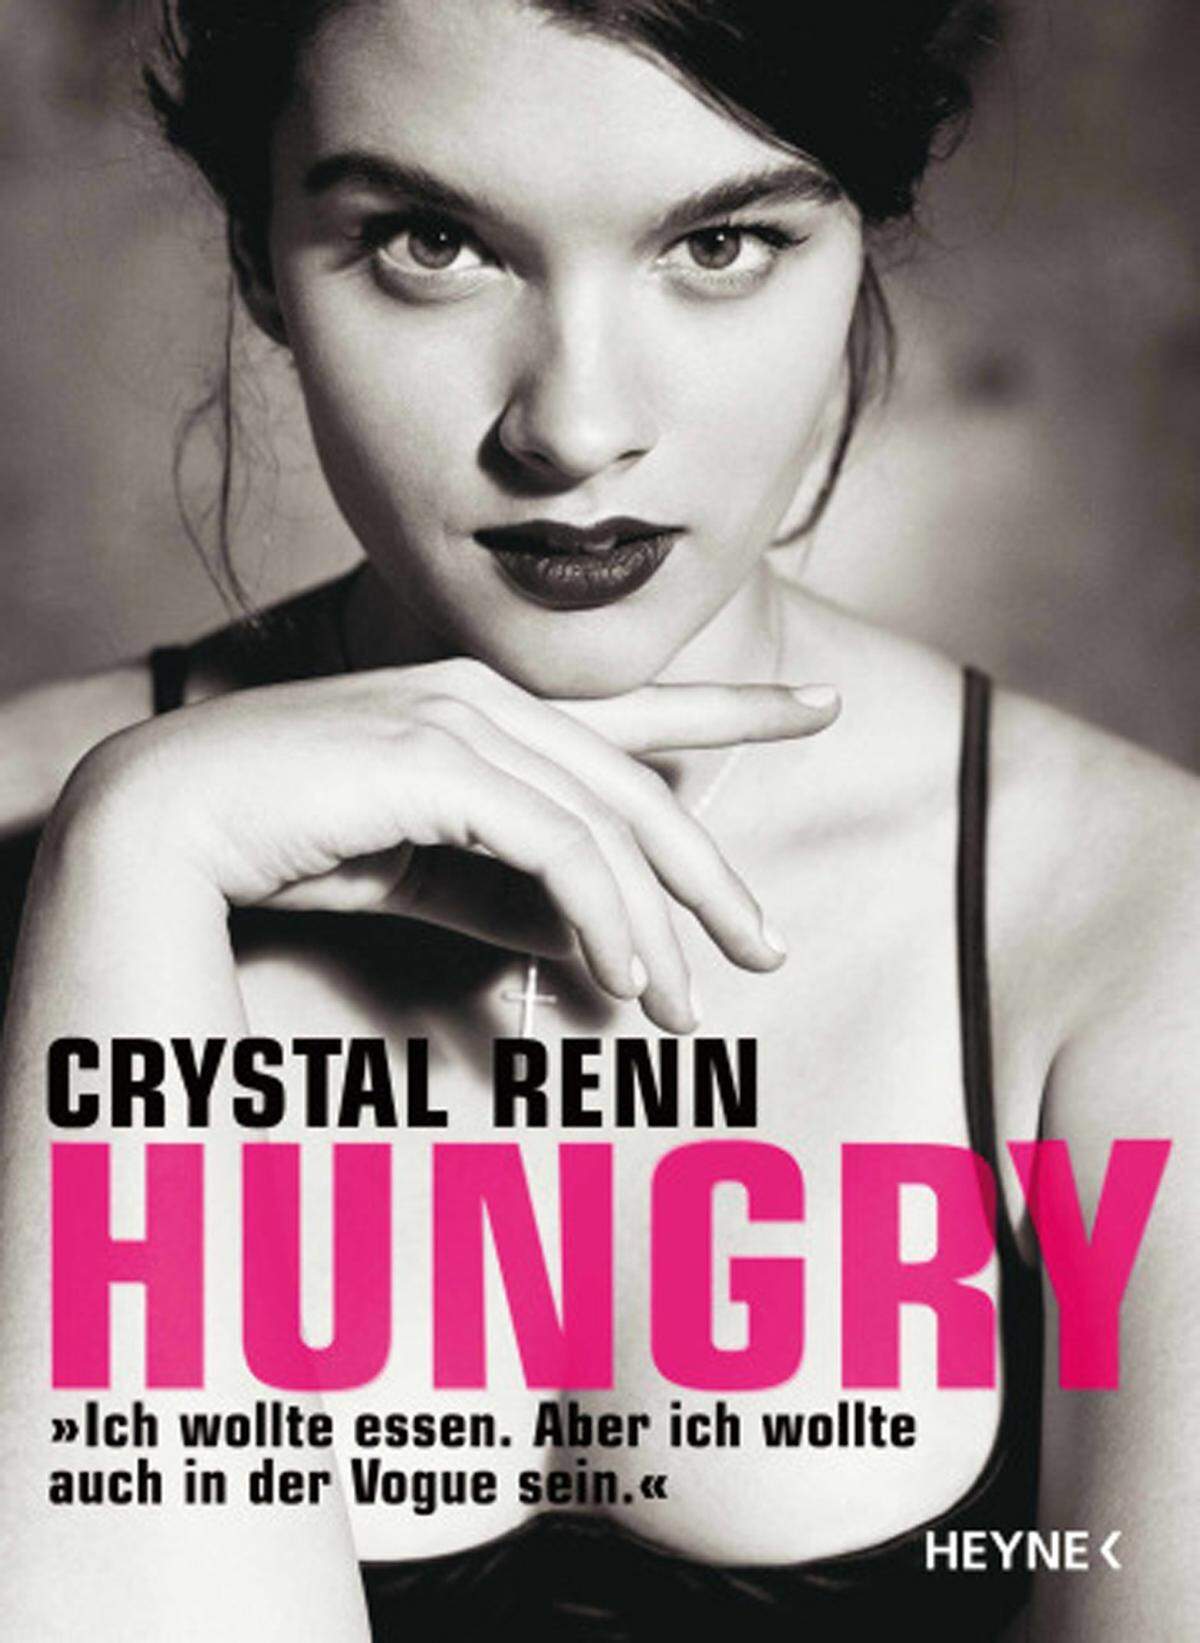 Über ihren Höhenflug schrieb sie sogar ein Buch, "Hungry: Ich wollte essen, aber ich wollte auch in die Vogue."